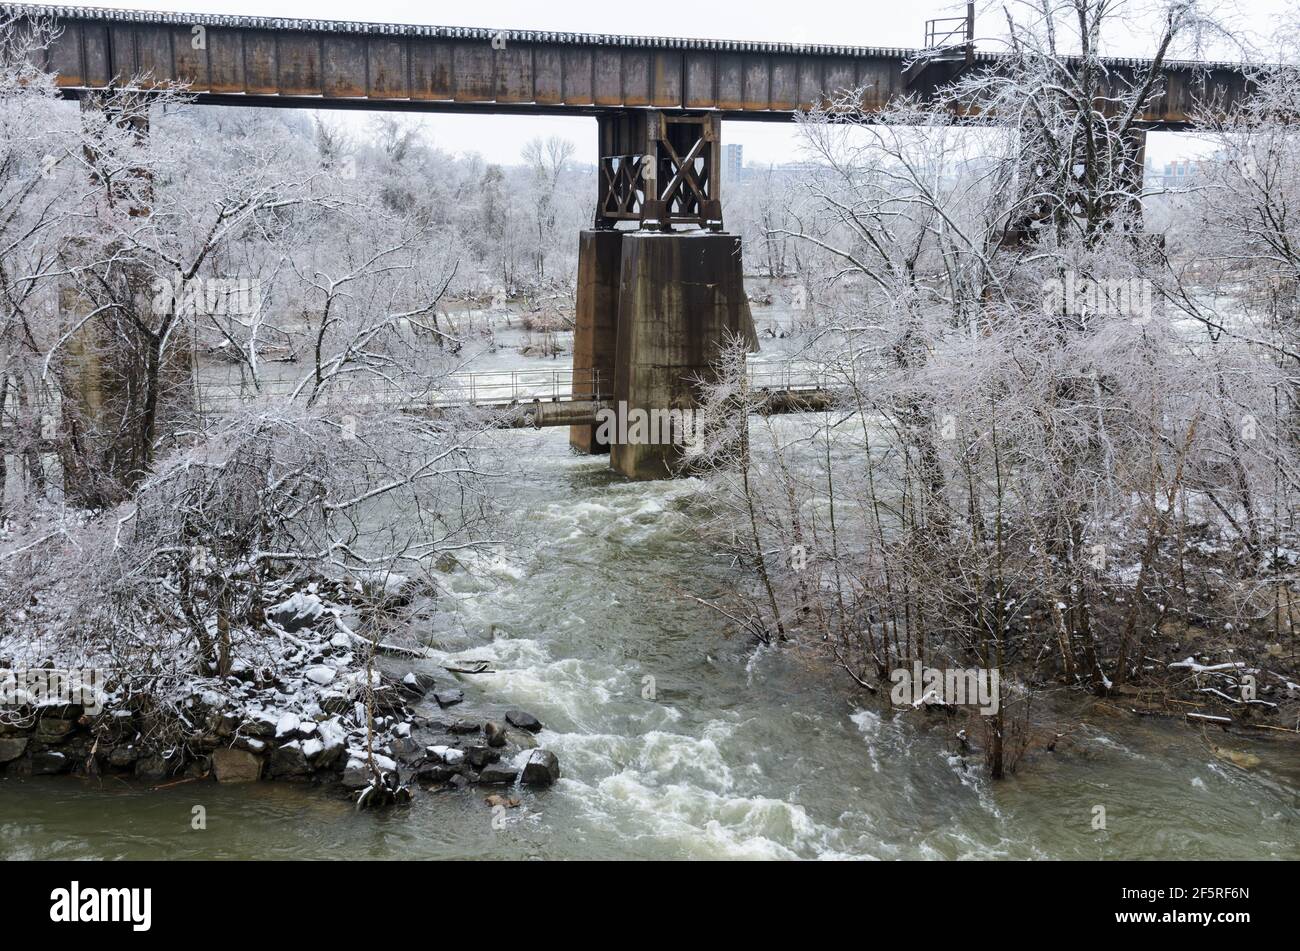 A bridge over the James River in Richmond, Virigina seen during a cold winter's morning. Stock Photo